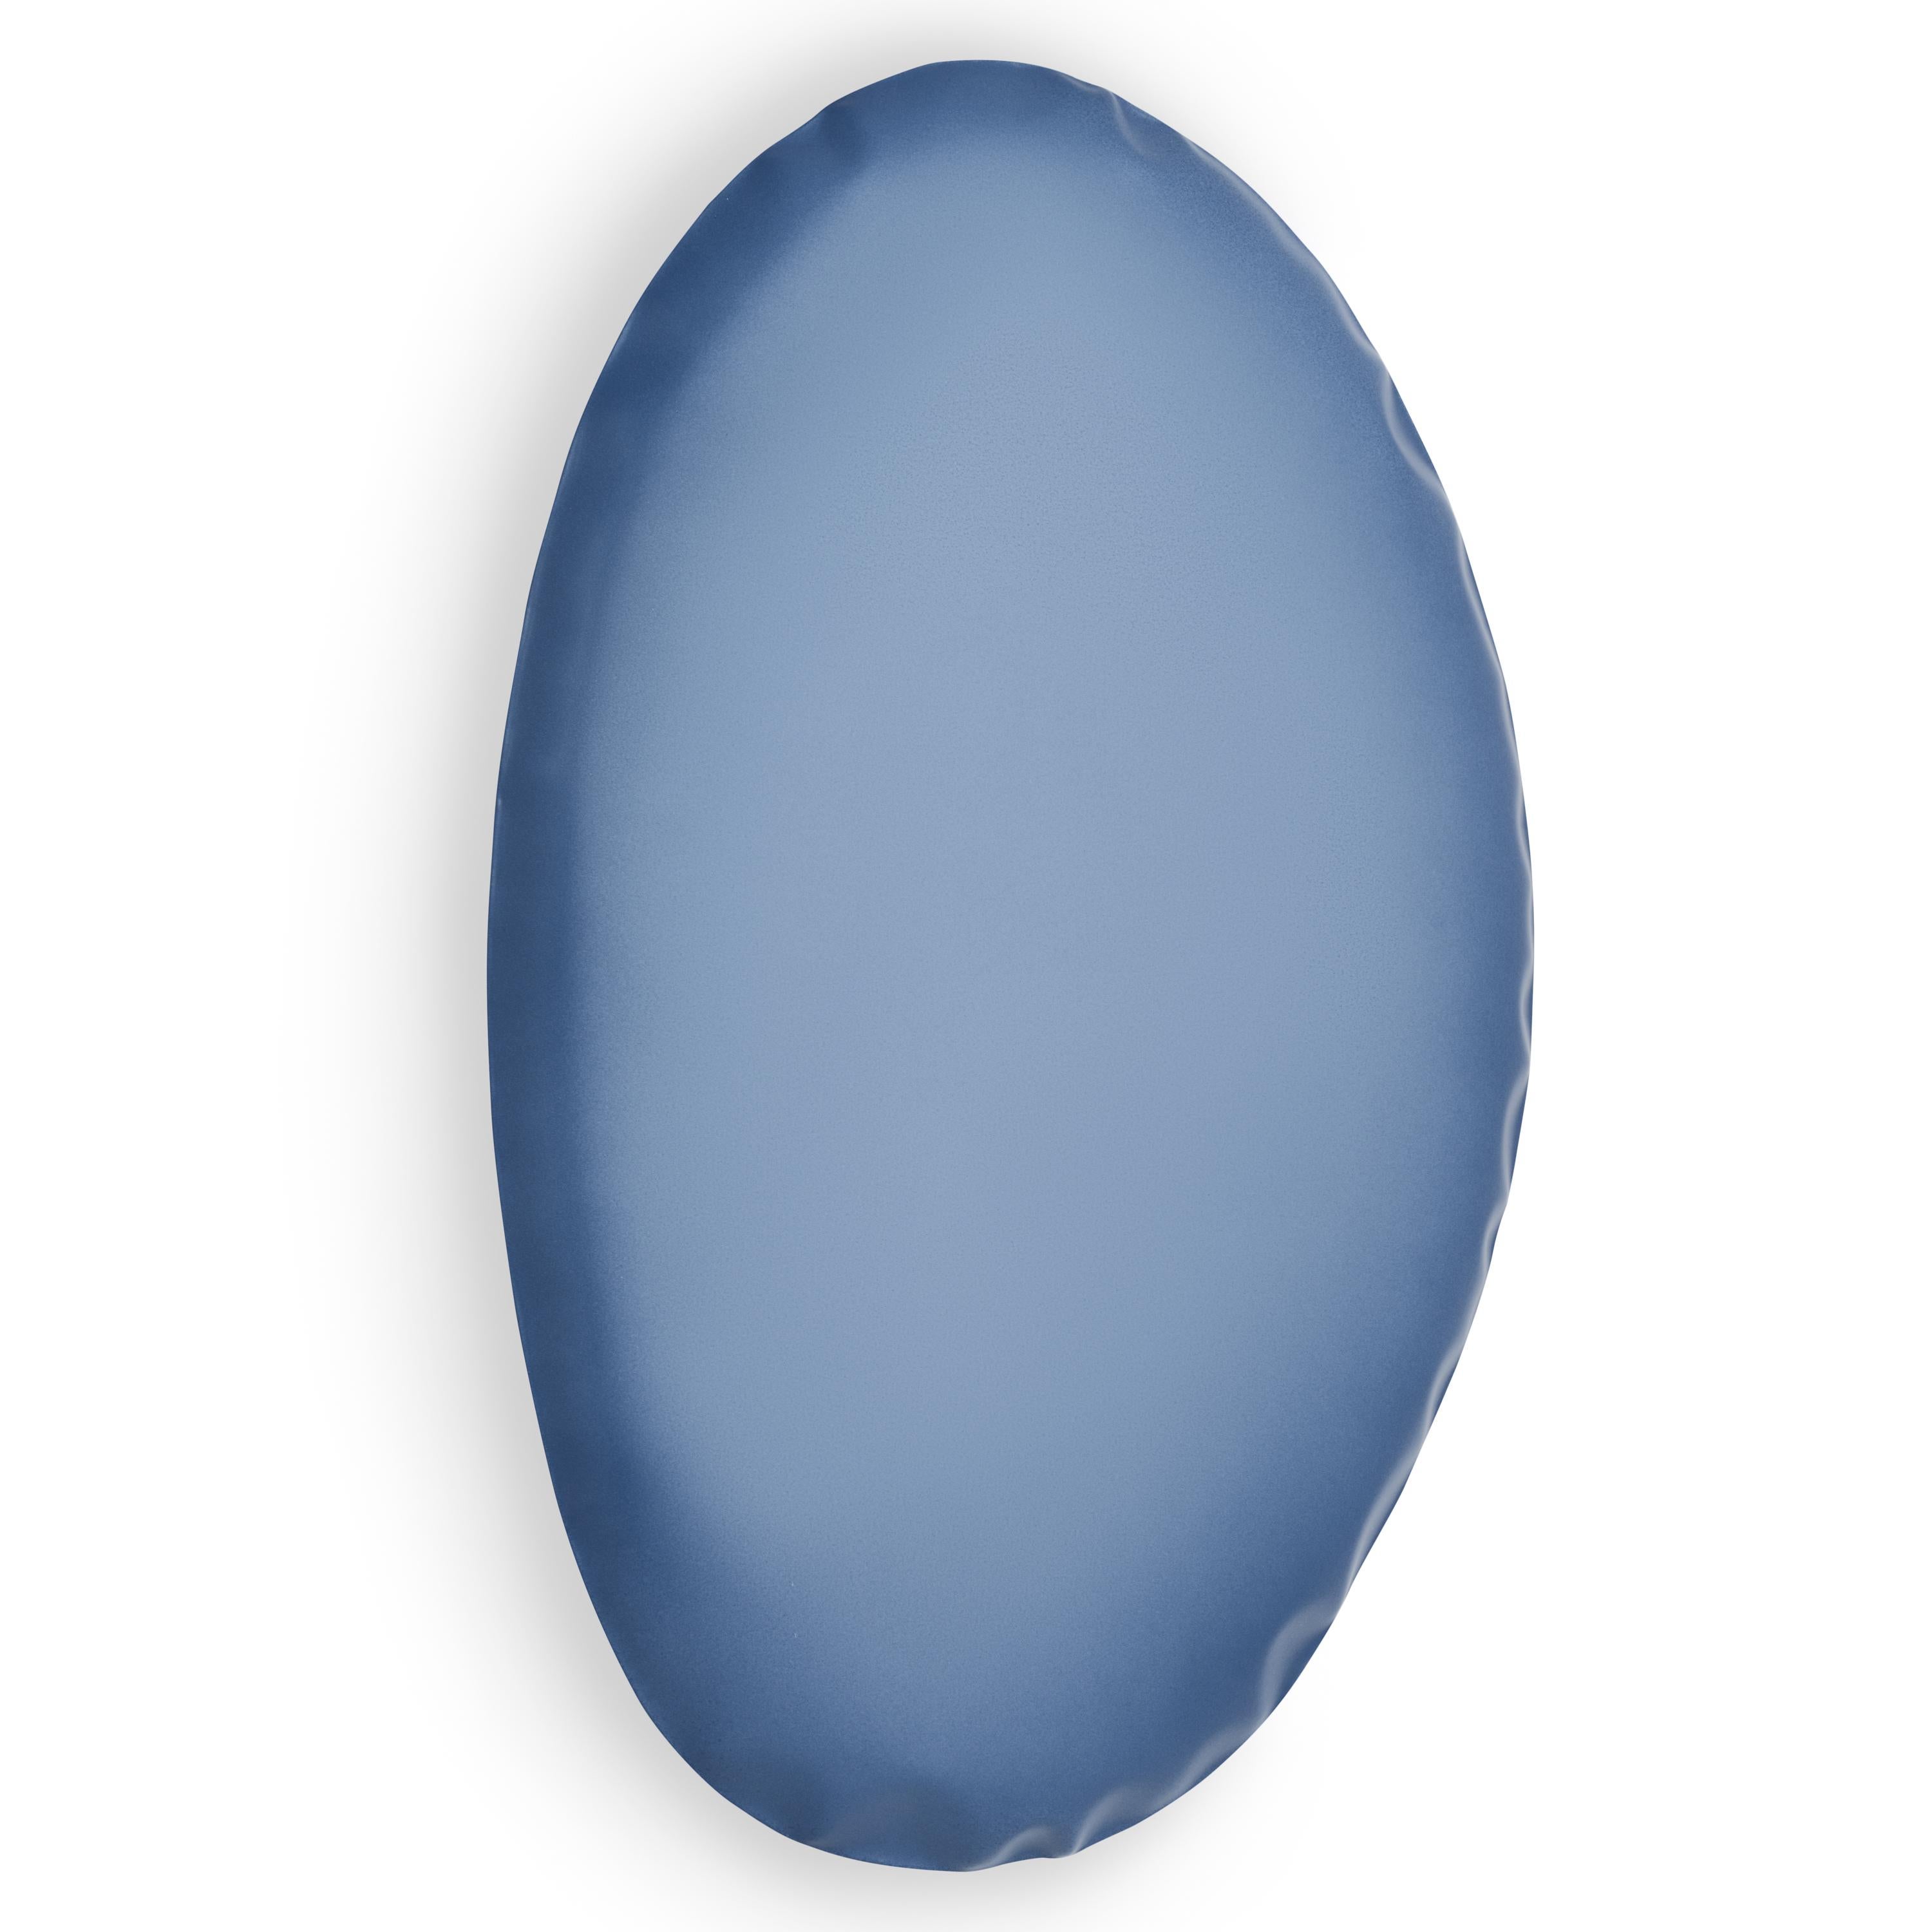 Miroir mural Tafla O5 bleu mat par Zieta
Dimensions : D6 x L40 x H60 cm 
Matériau : acier
Finitions disponibles : Egalement disponible dans d'autres tailles et couleurs, veuillez nous contacter.

Empreintes en acier doux
La remise en question du